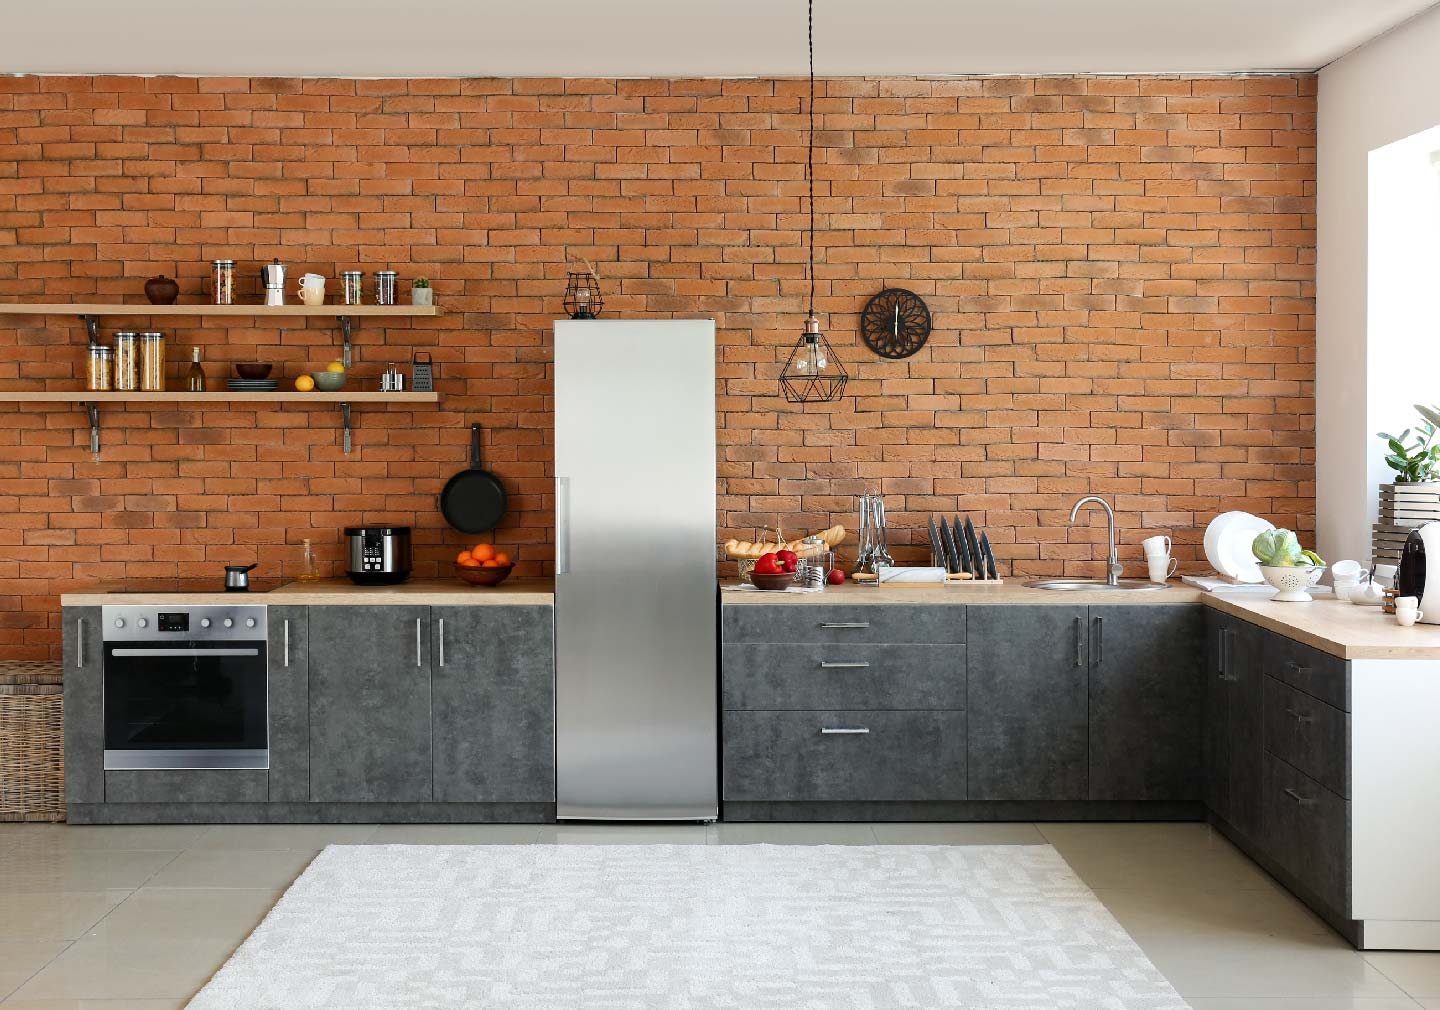 Get a kitchen island table - kitchen interior designs